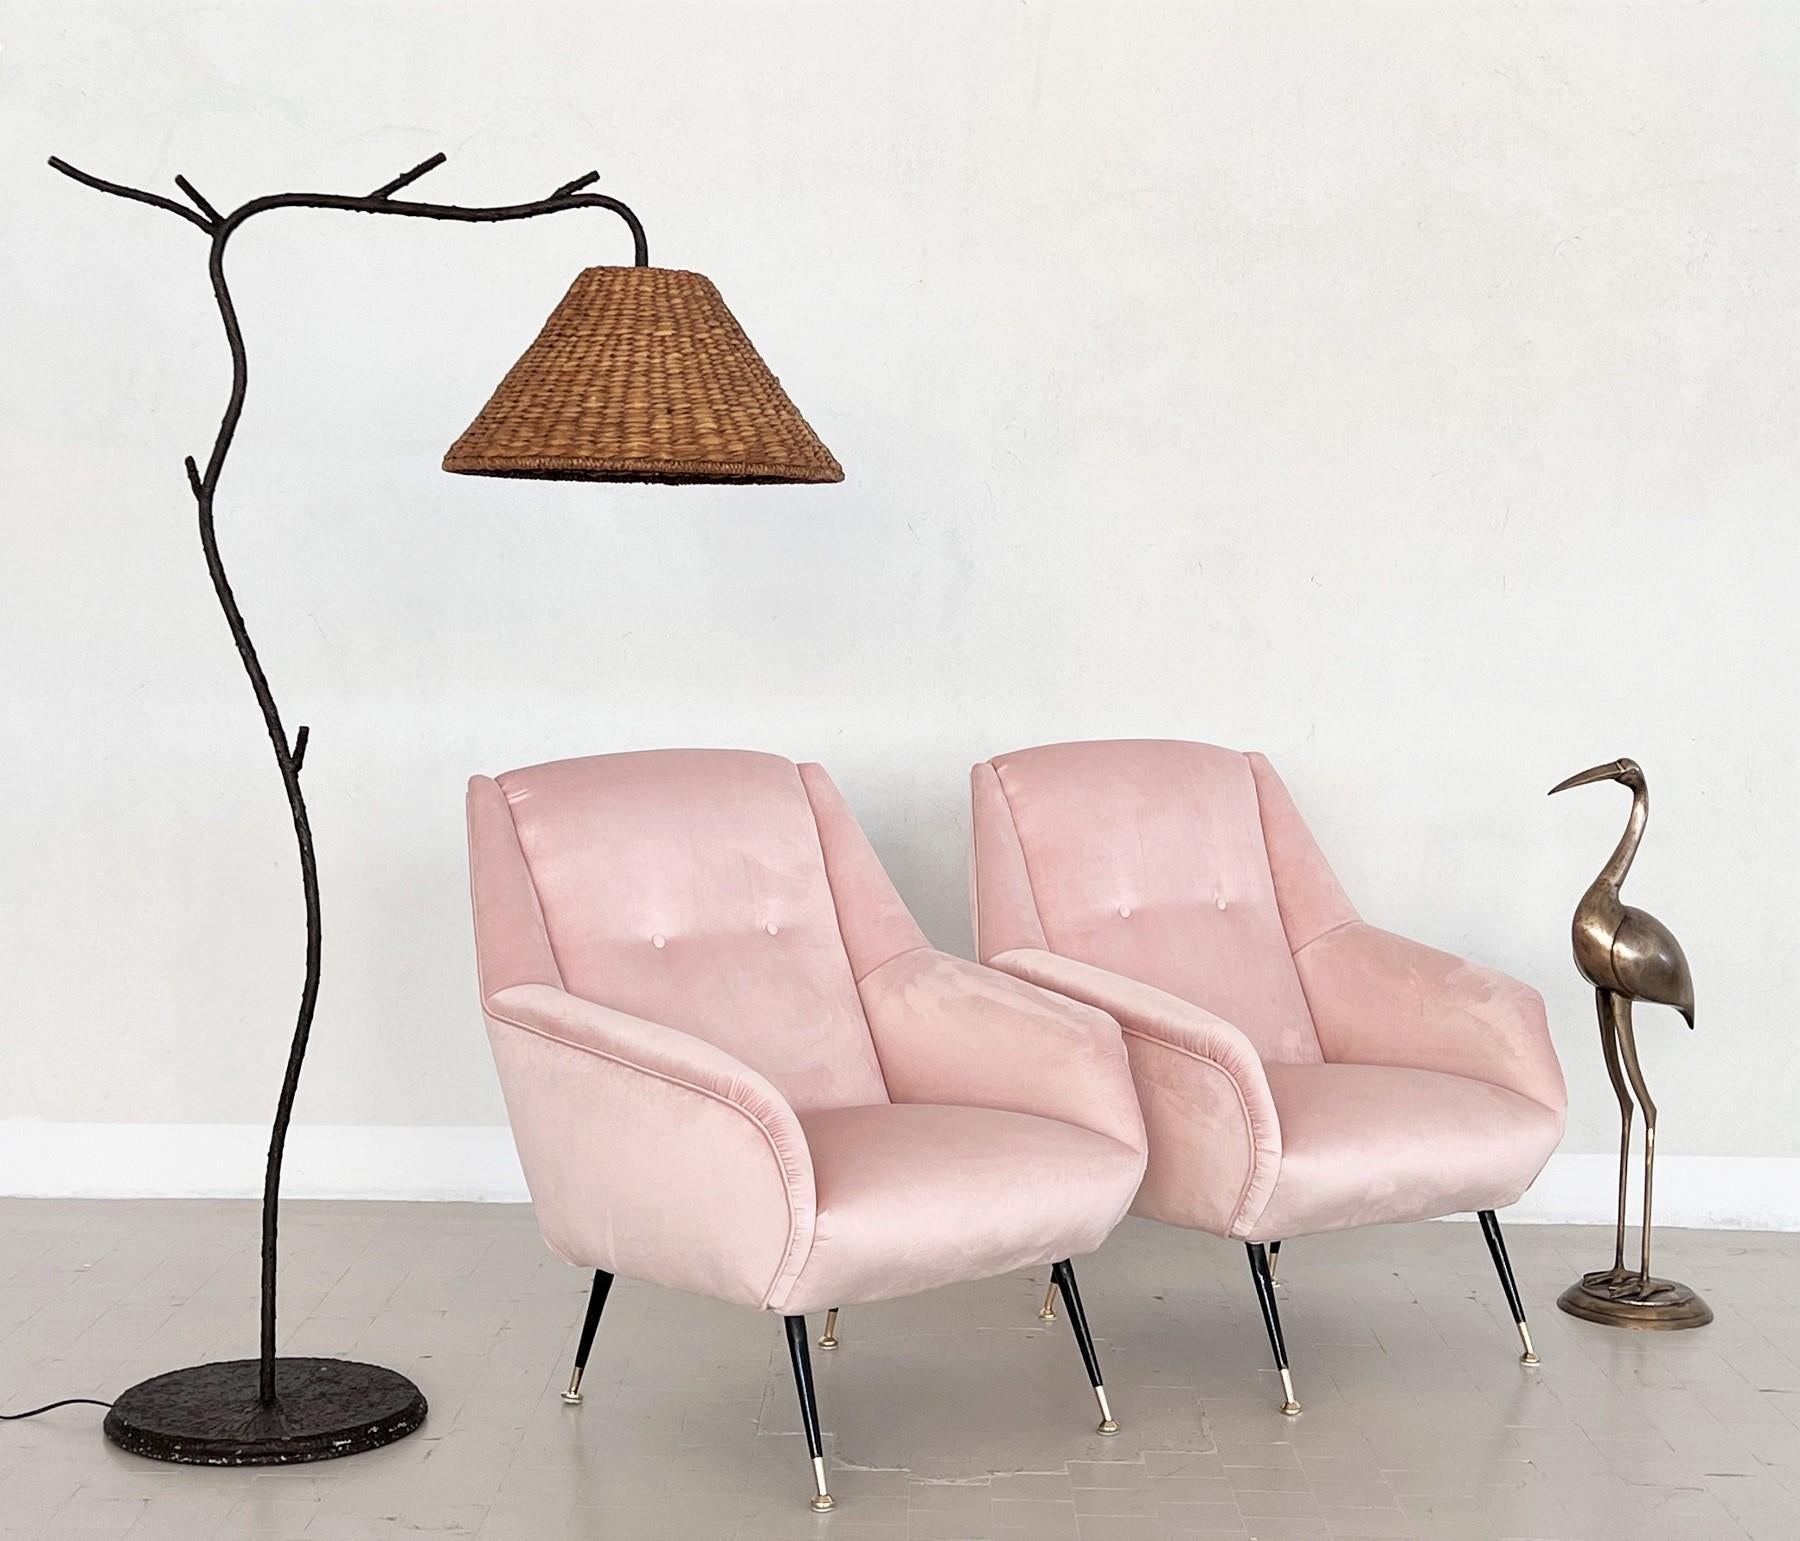 Elegant et magnifique paire de deux fauteuils ou chaises de salon italiens originaux du milieu du siècle dernier, datant des années 1950, avec des pieds en métal noir et des embouts en laiton brillant.
Entièrement restaurée à l'intérieur avec des